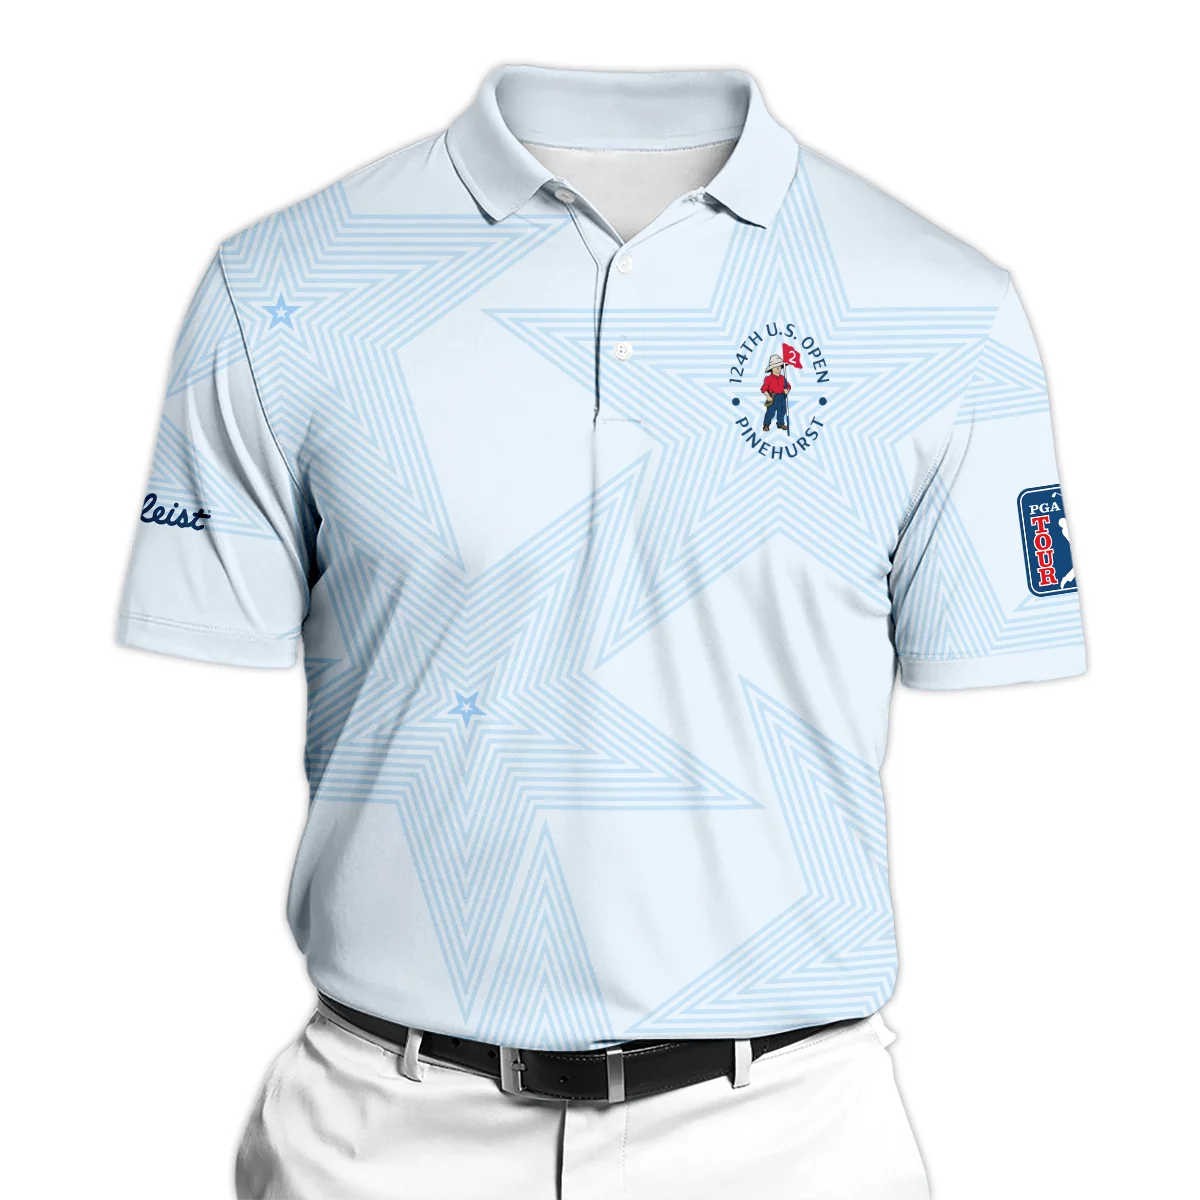 124th U.S. Open Pinehurst Golf Titleist Zipper Polo Shirt Sports Star Sripe Light Blue Zipper Polo Shirt For Men